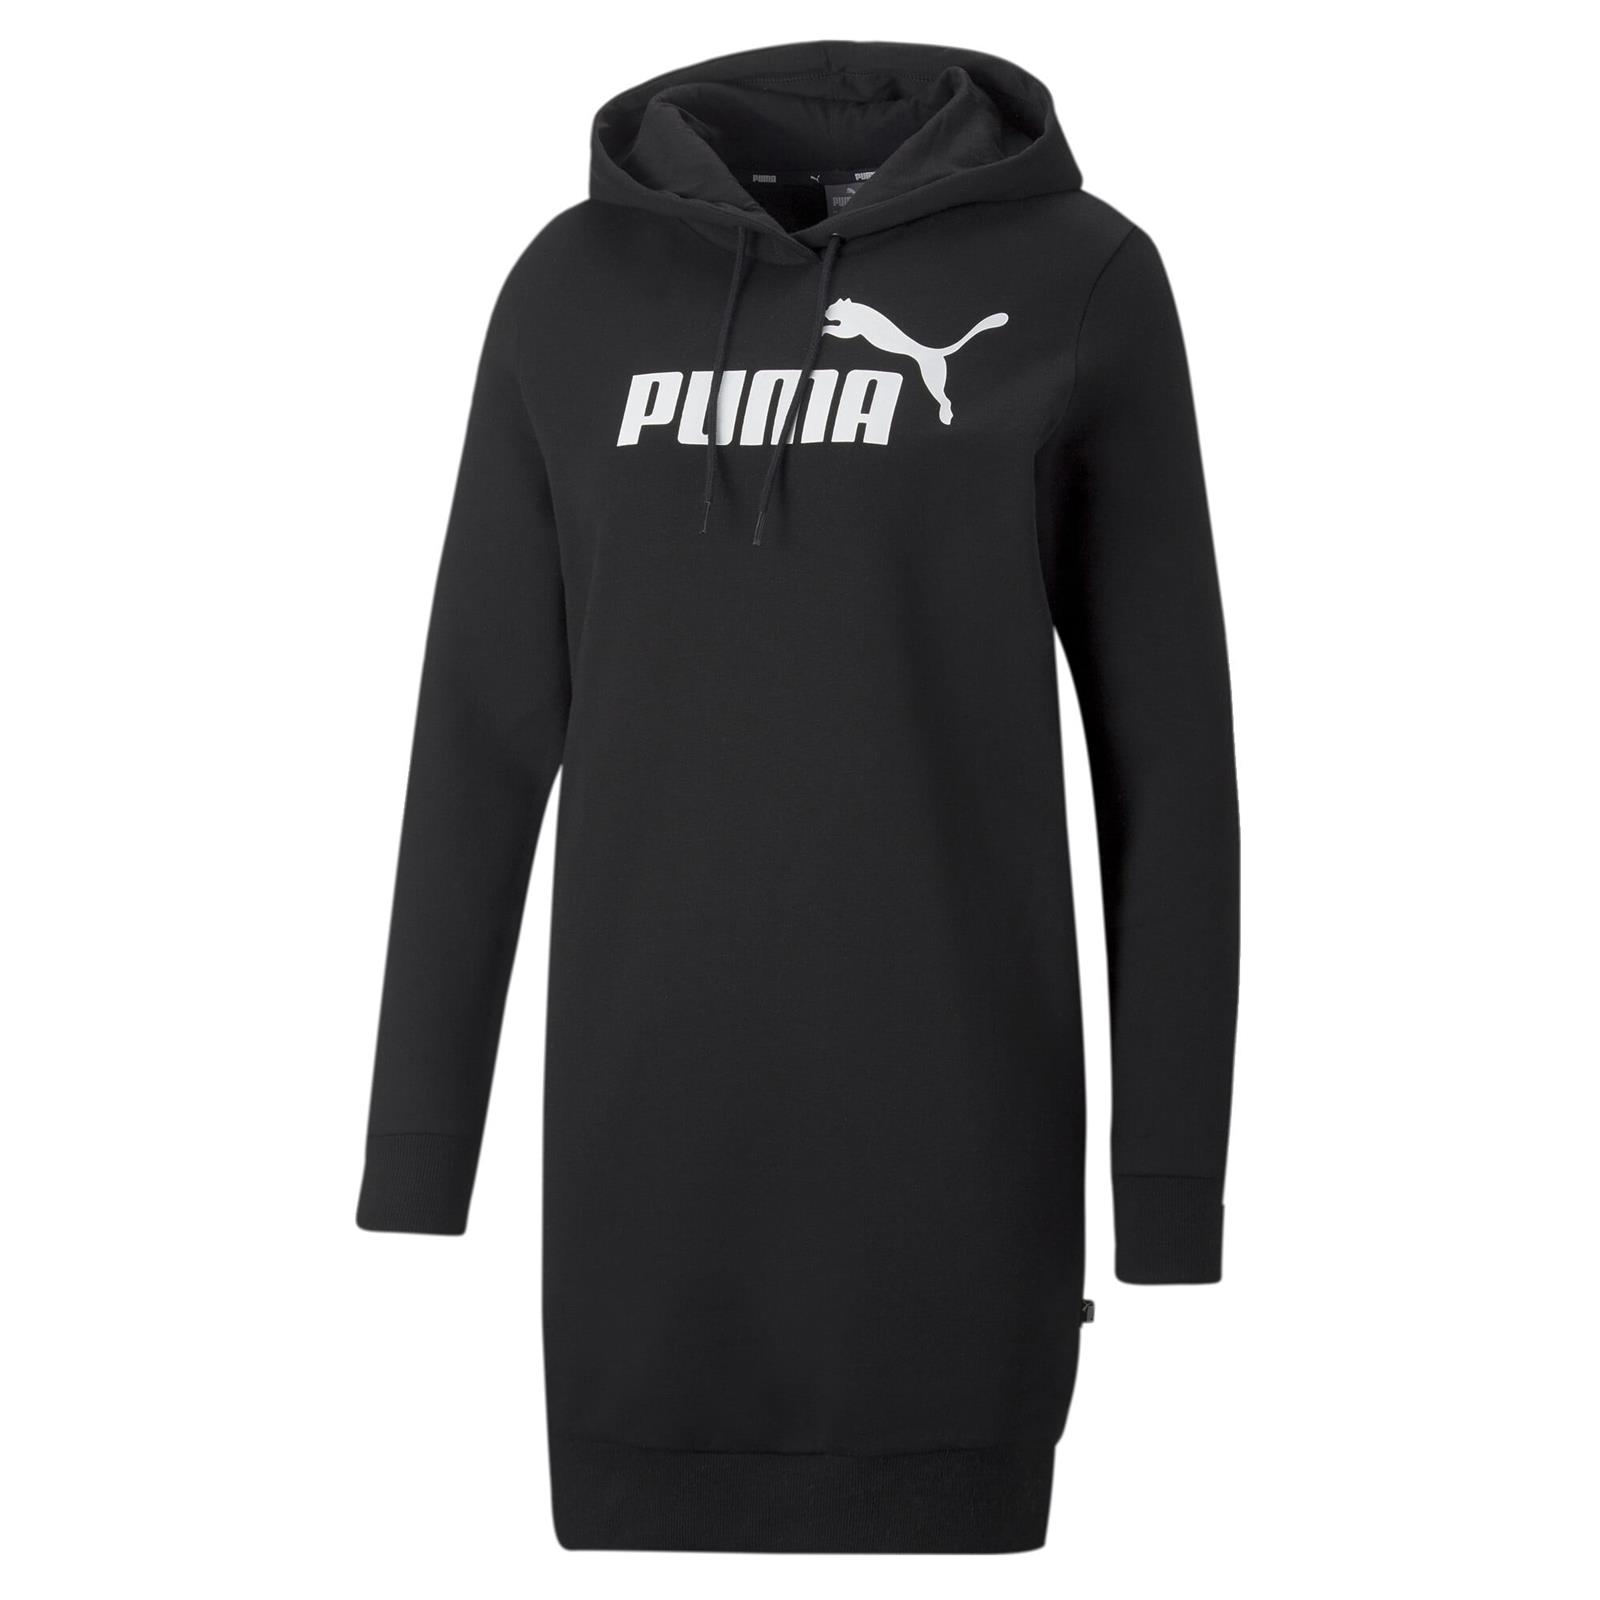 Sukienka damska Puma Ess Logo czarna 67198801